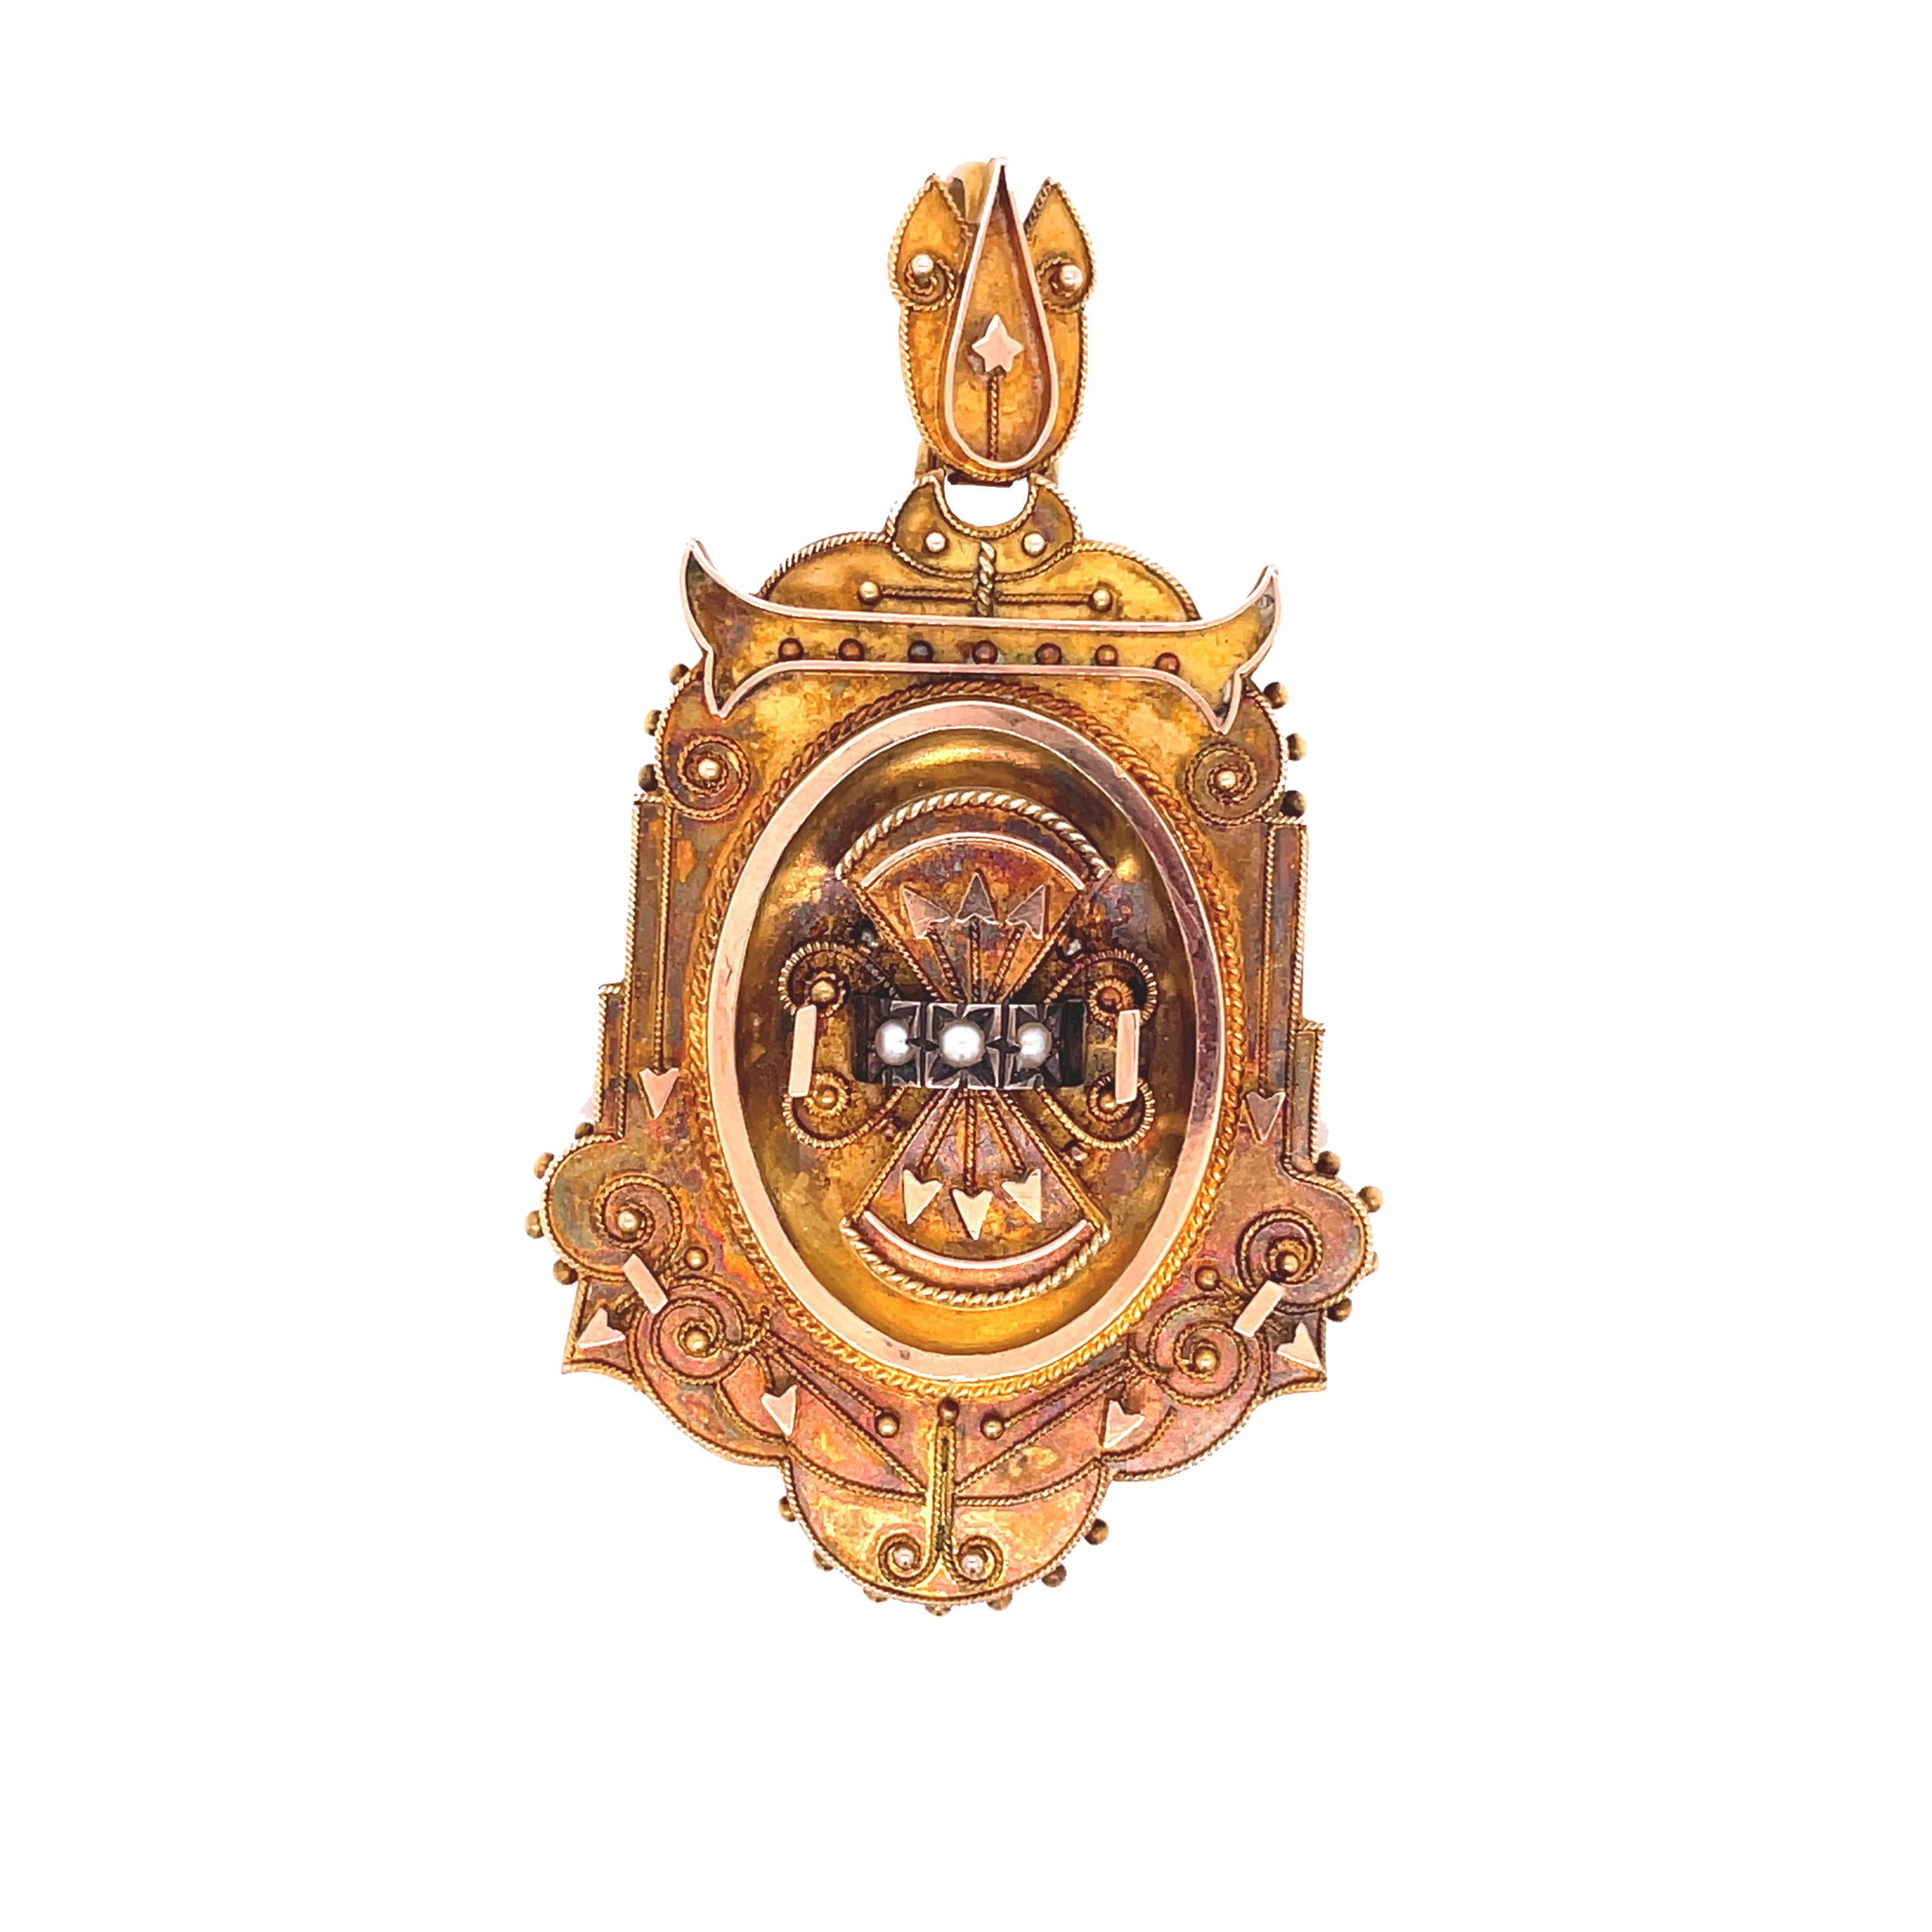 Dies ist eine exquisite 1880 etruskischen Medaillon in 14K Gelbgold, dass ein verziertes Design mit Saatgut Perlen verziert verfügt gesetzt. Dieses Medaillon ist wirklich spektakulär, nicht nur wegen seines Alters, sondern auch wegen der